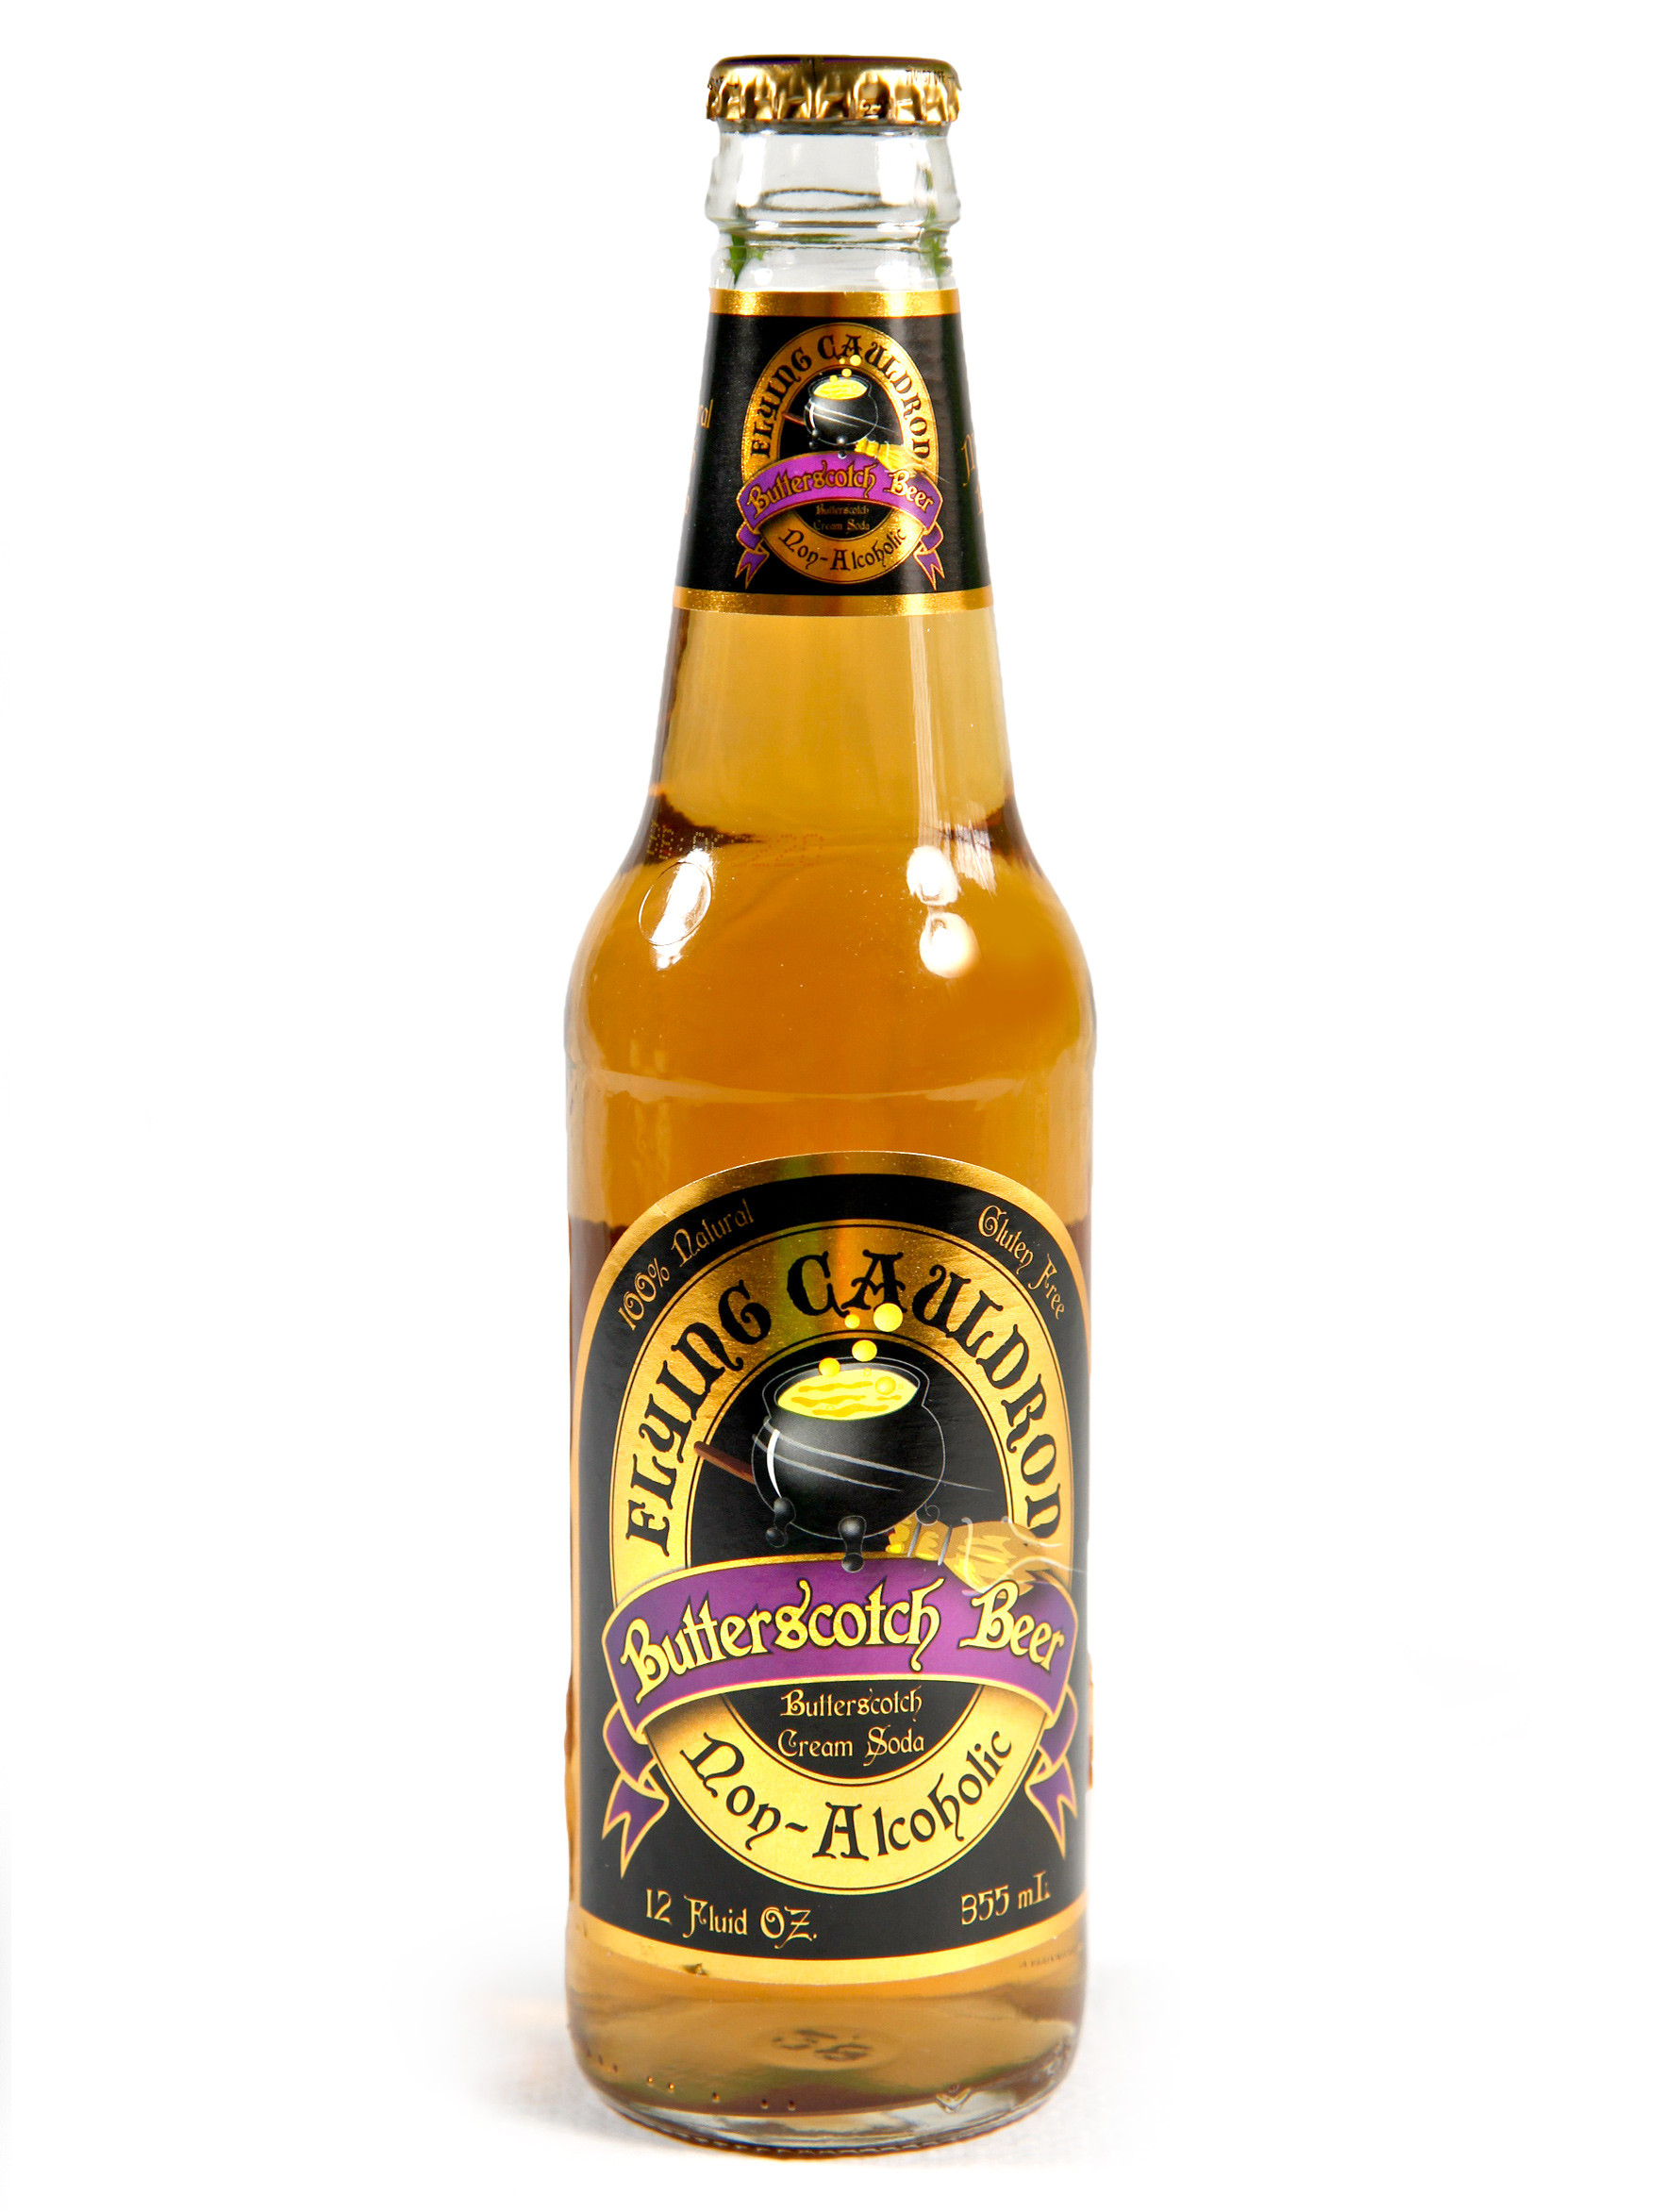 Cerveza de Mantequilla de Harry Potter - Recetas El Comidista EL PAÍS, PDF, Crema